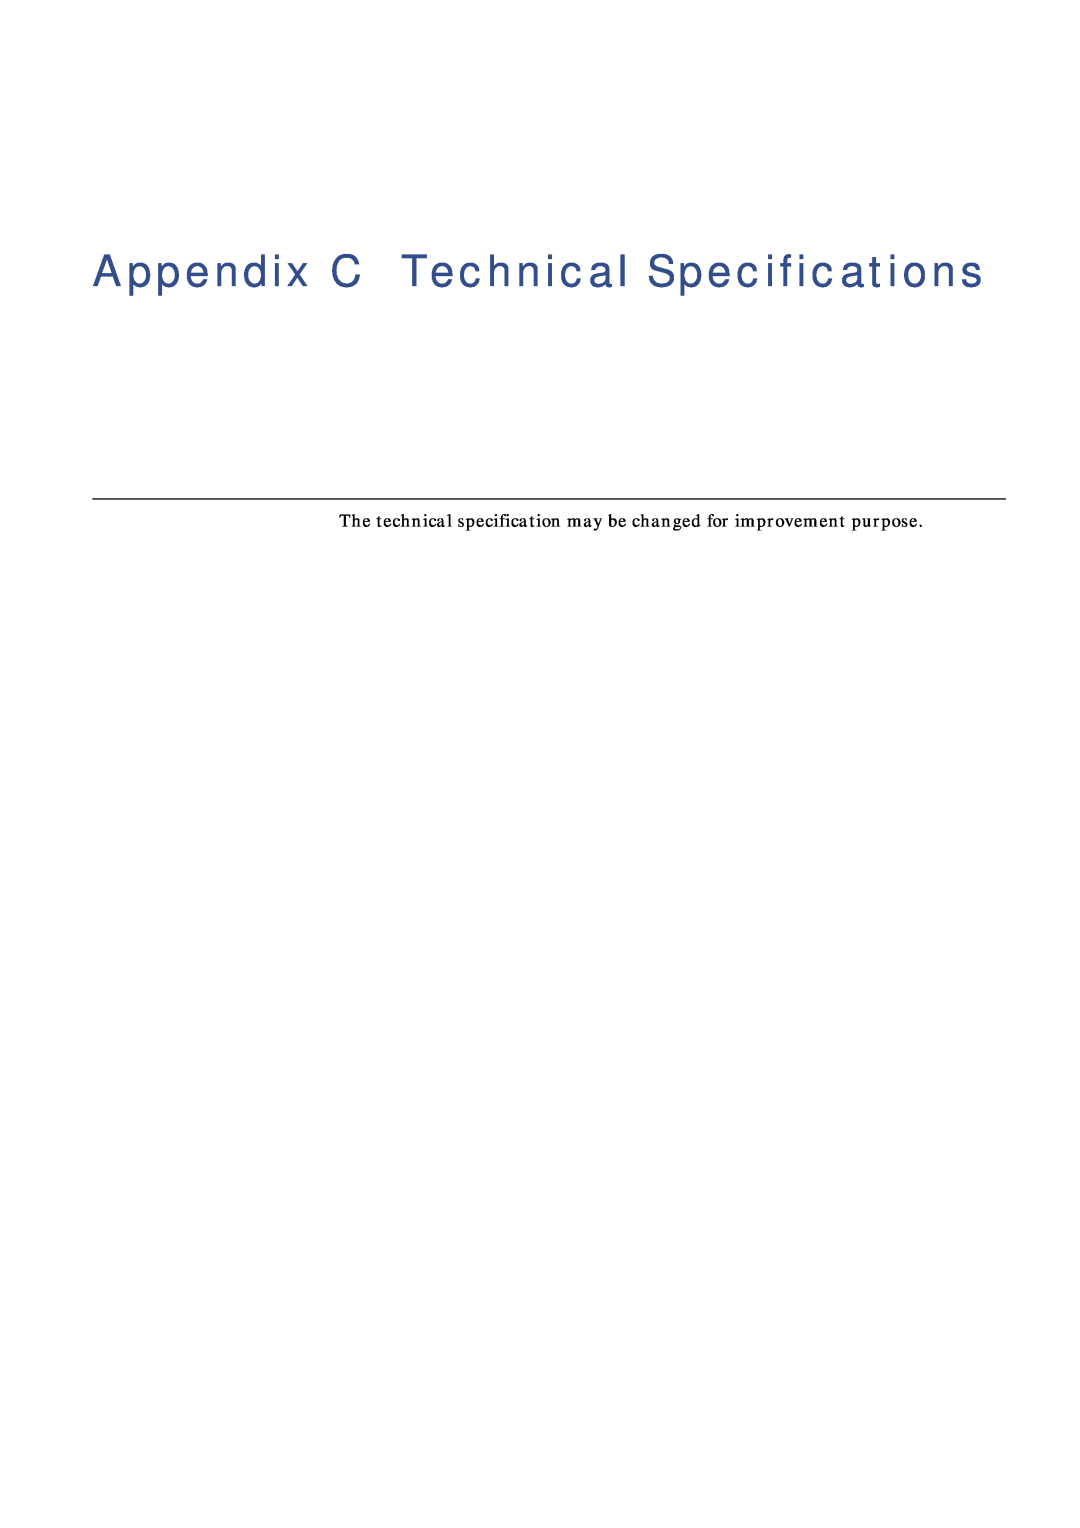 Xerox FS-C8008DN Appendix C Technical Specifications, The technical specification may be changed for improvement purpose 